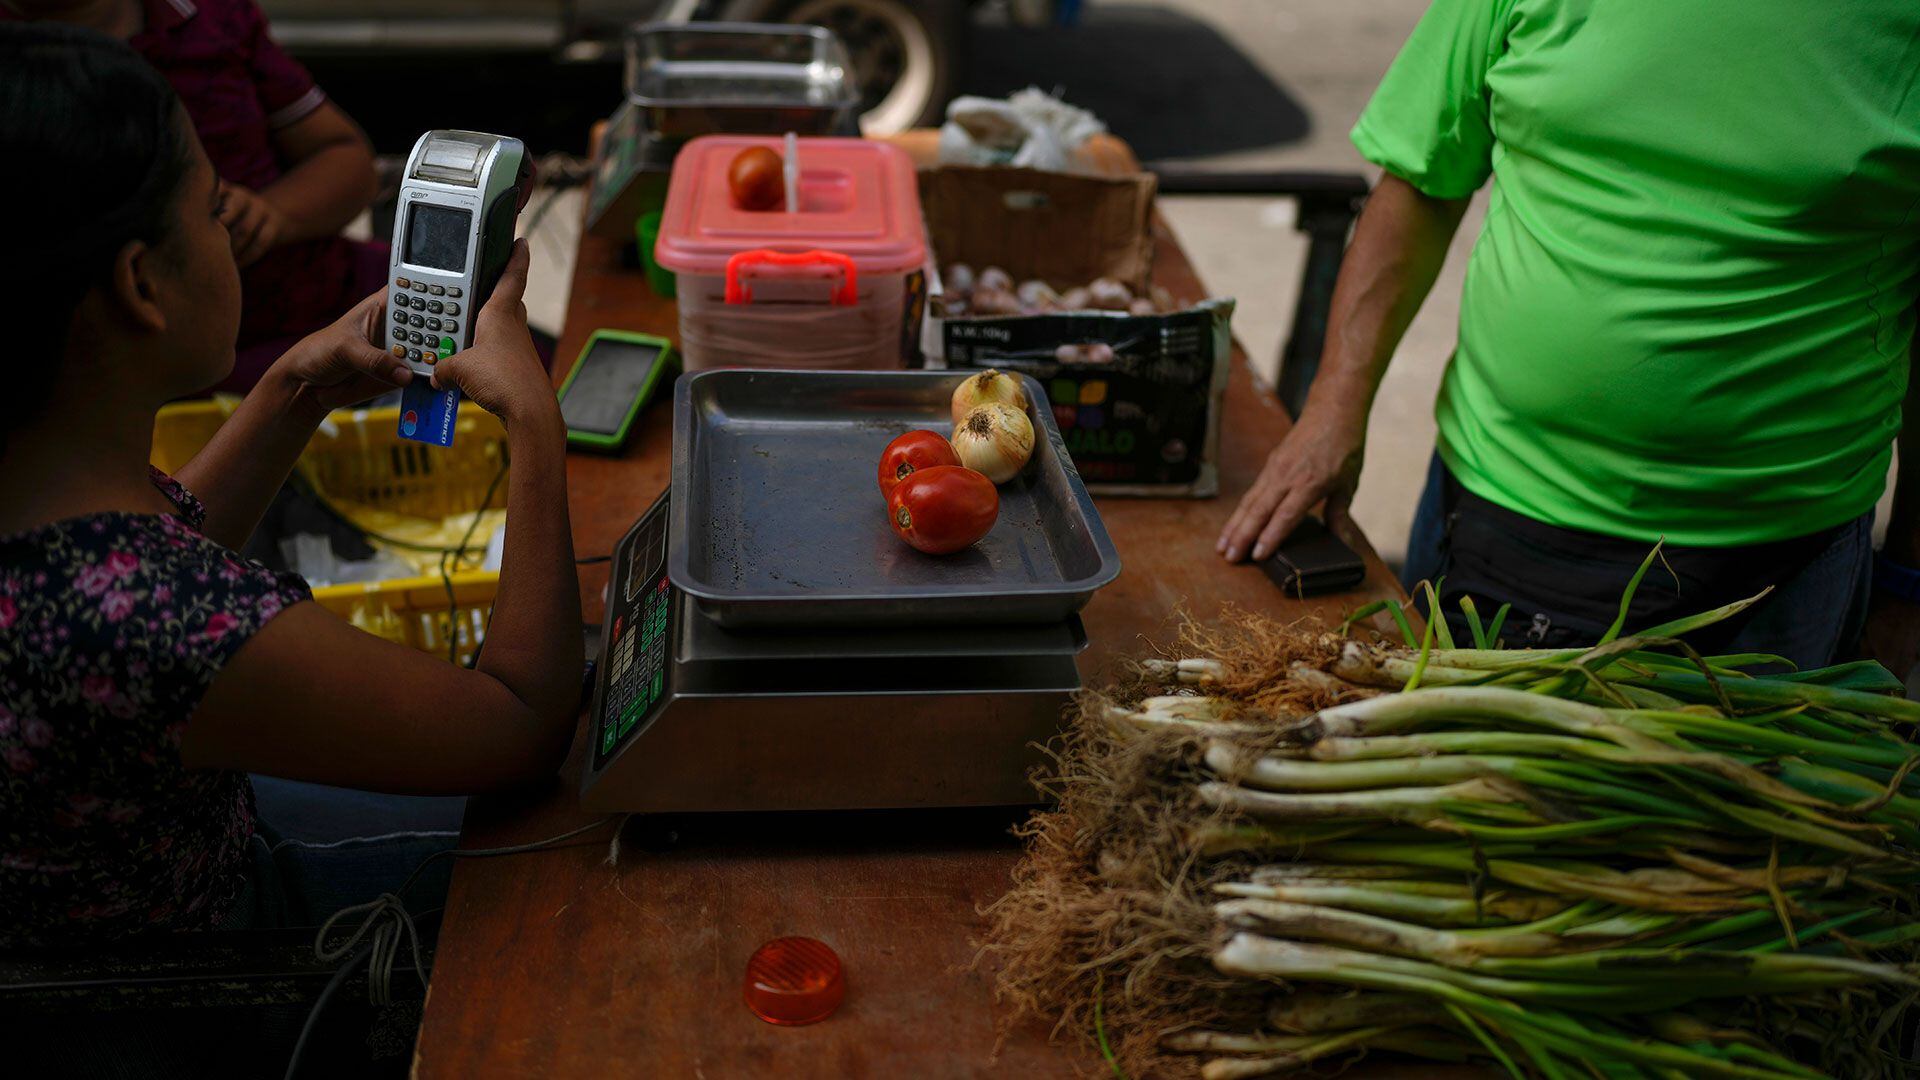 Una vendedora usa una terminal de pago para cobrarle a un cliente su compra de tomates y cebollas, en Caracas (AP Foto/Ariana Cubillos)